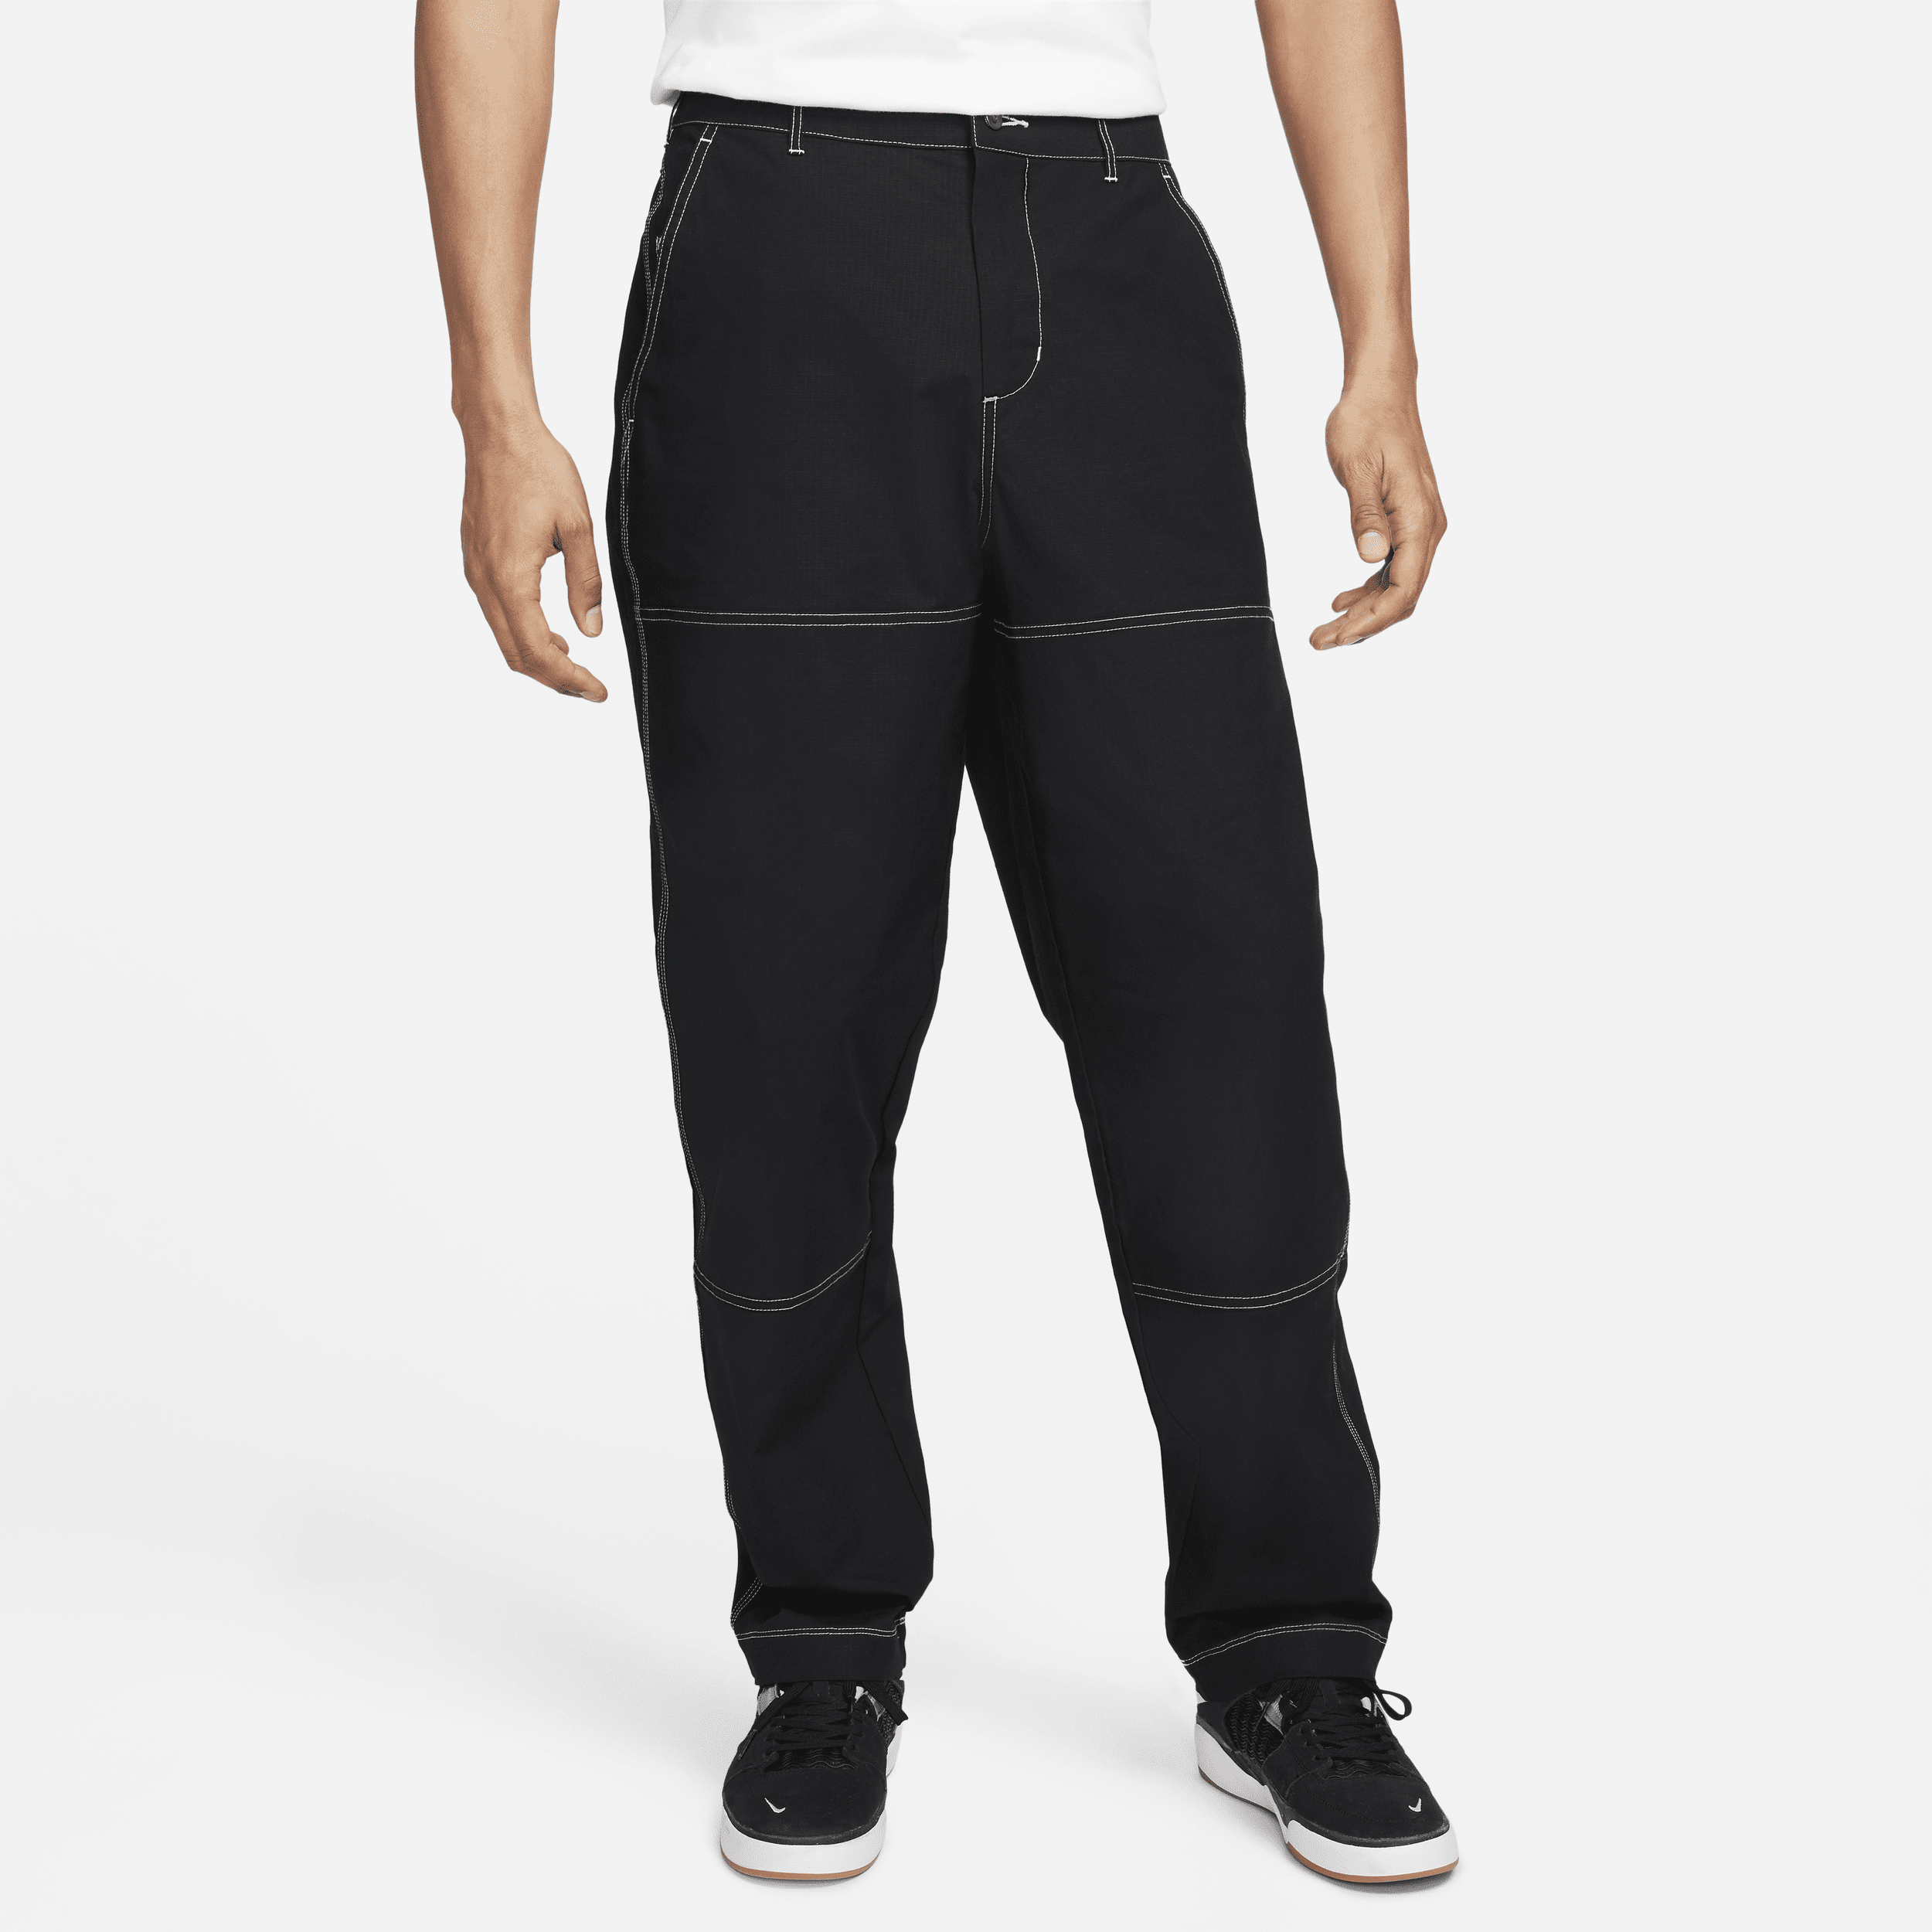 Nike SB Pantalón de skateboard con refuerzo en la rodilla - Hombre - Negro